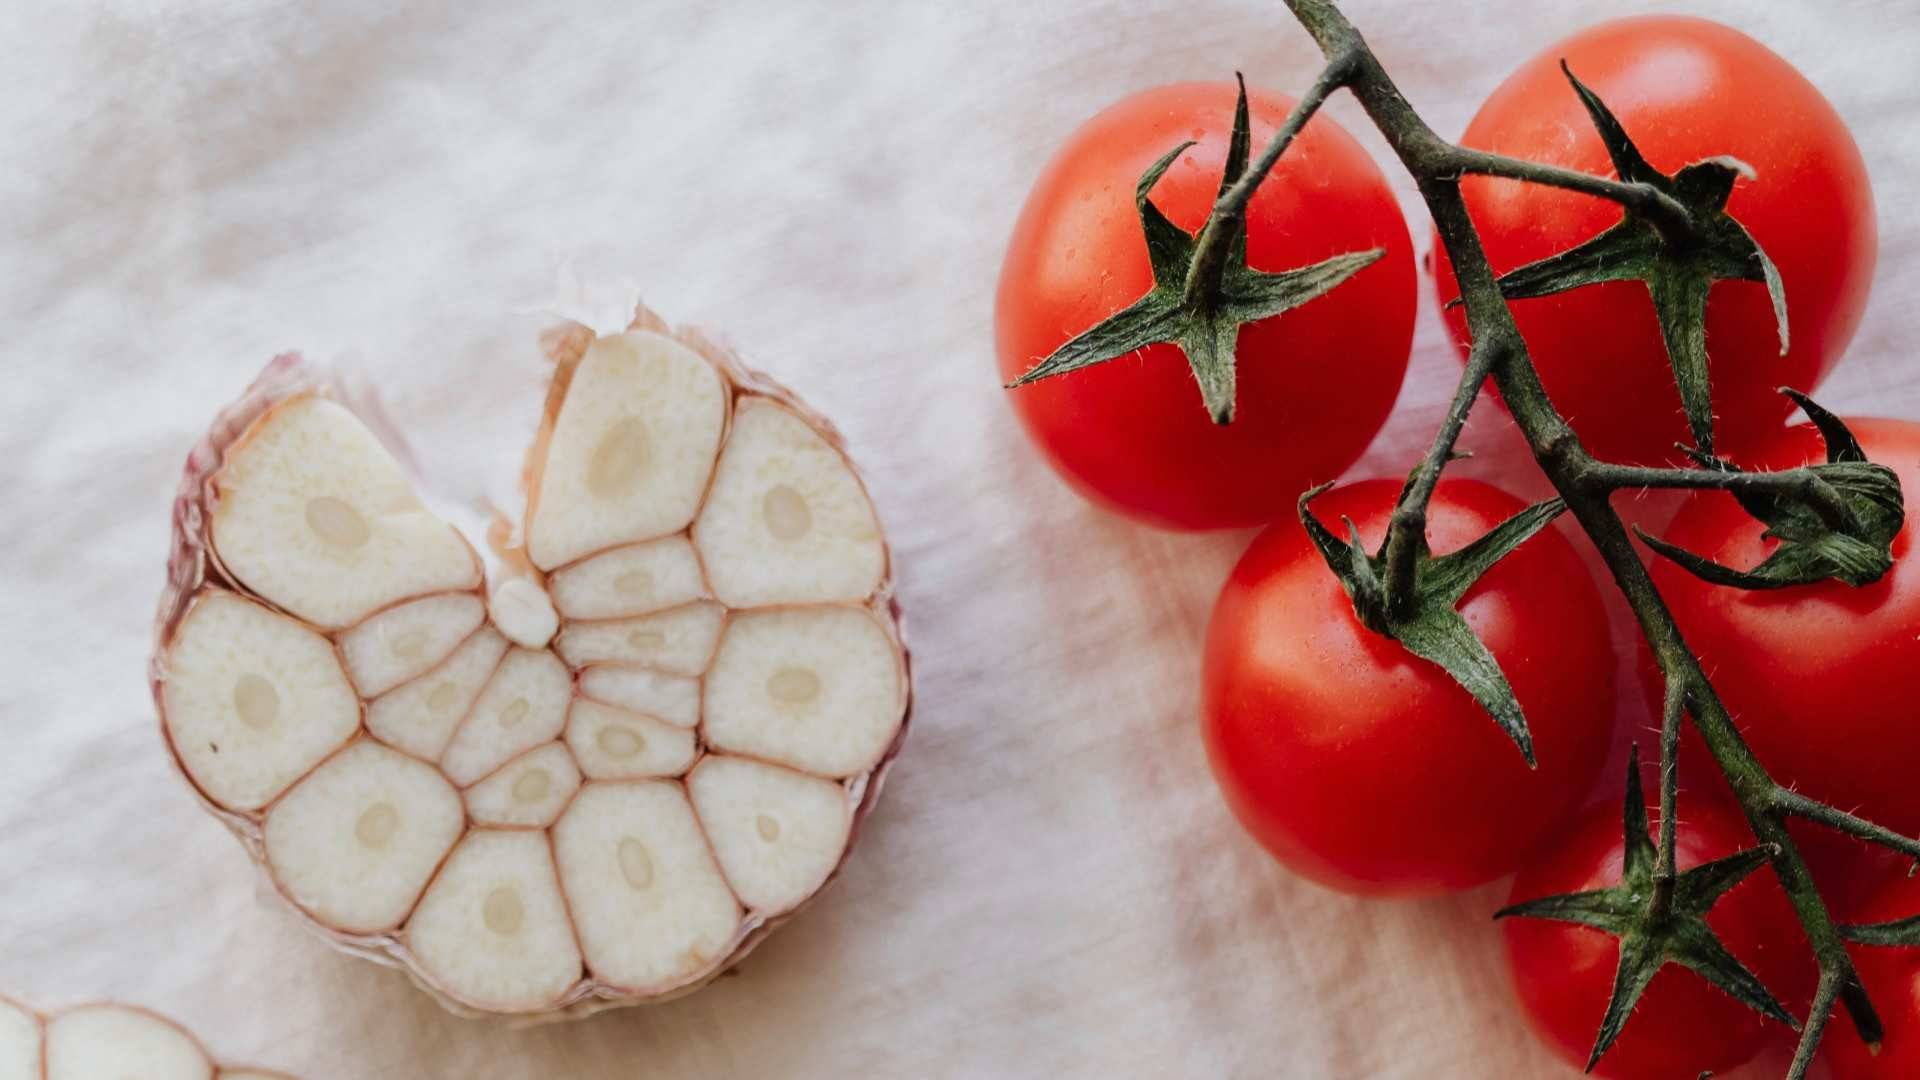 El ajo y el tomate son dos ingredientes principales para el salmorejo cordobés